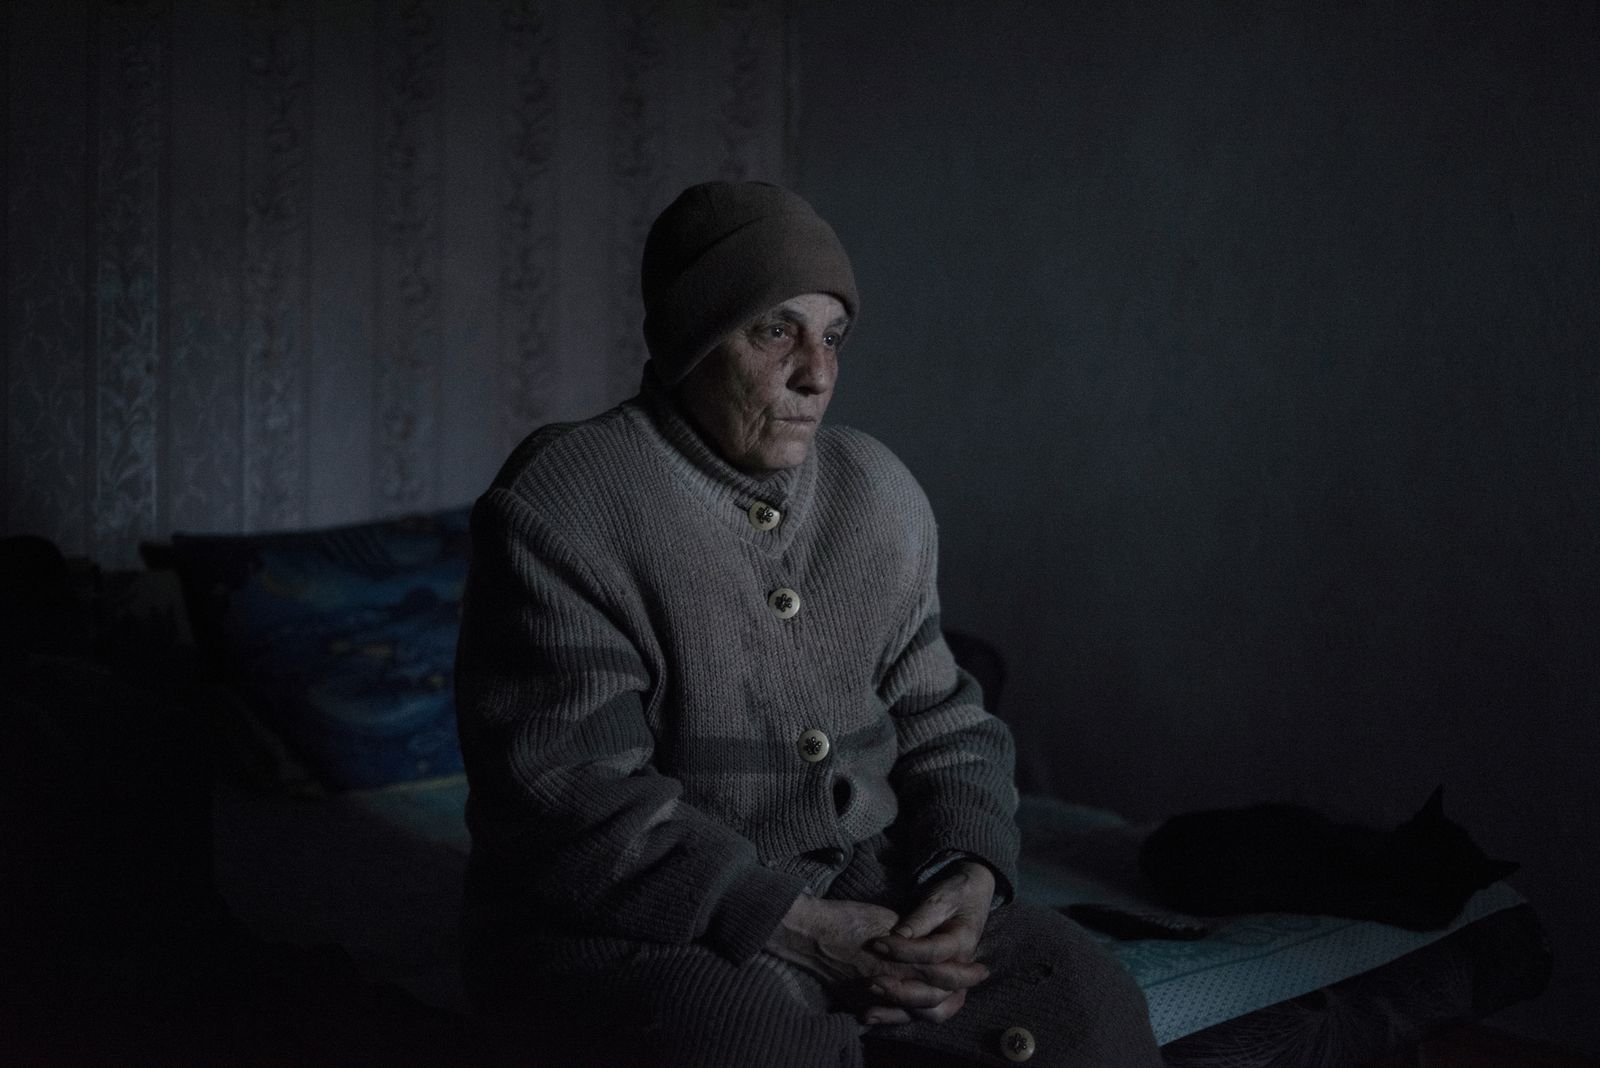 © Valery Melnikov - Zinaida Pavlova, 76 is the resident of the frontline village of Kominternovo of the Donetsk region , Ukraine